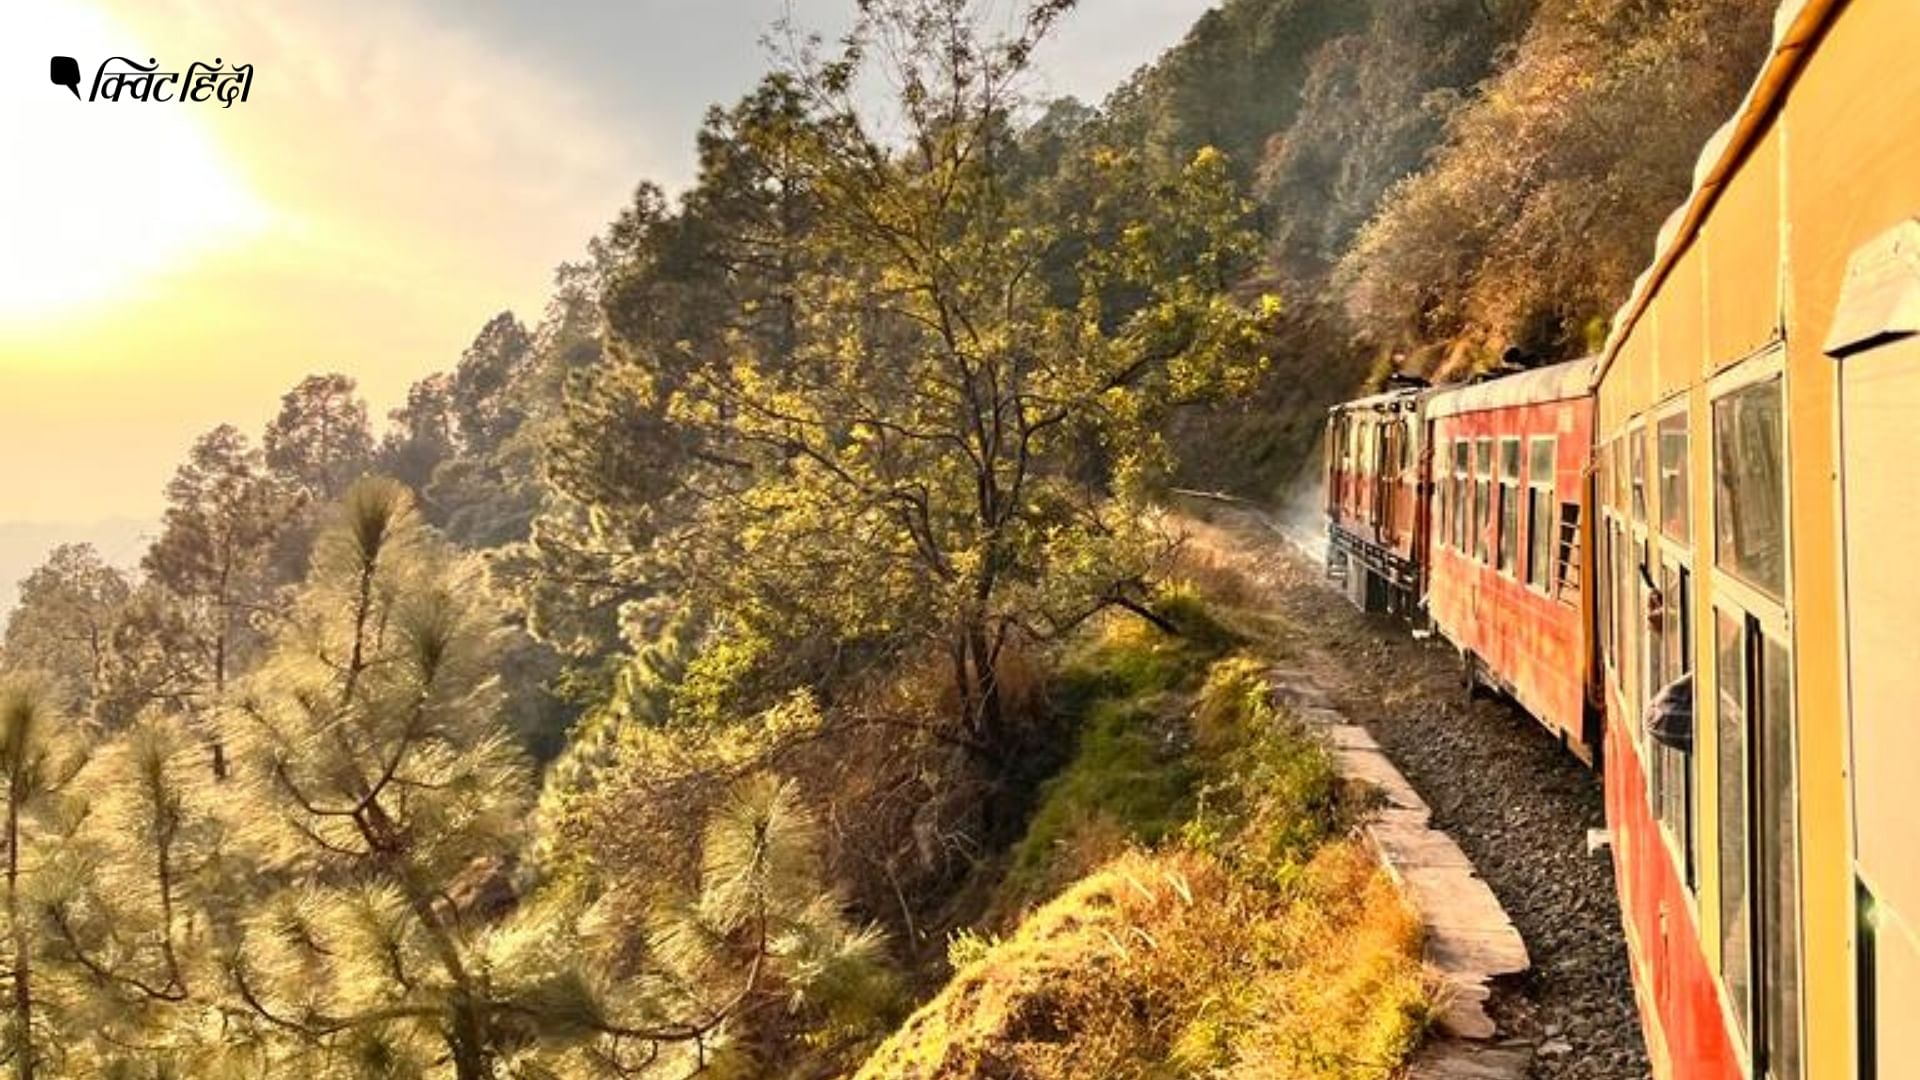 <div class="paragraphs"><p>कालका से शिमला तक टॉय ट्रेन से दिखता है इतना खूबसूरत नजारा</p></div>